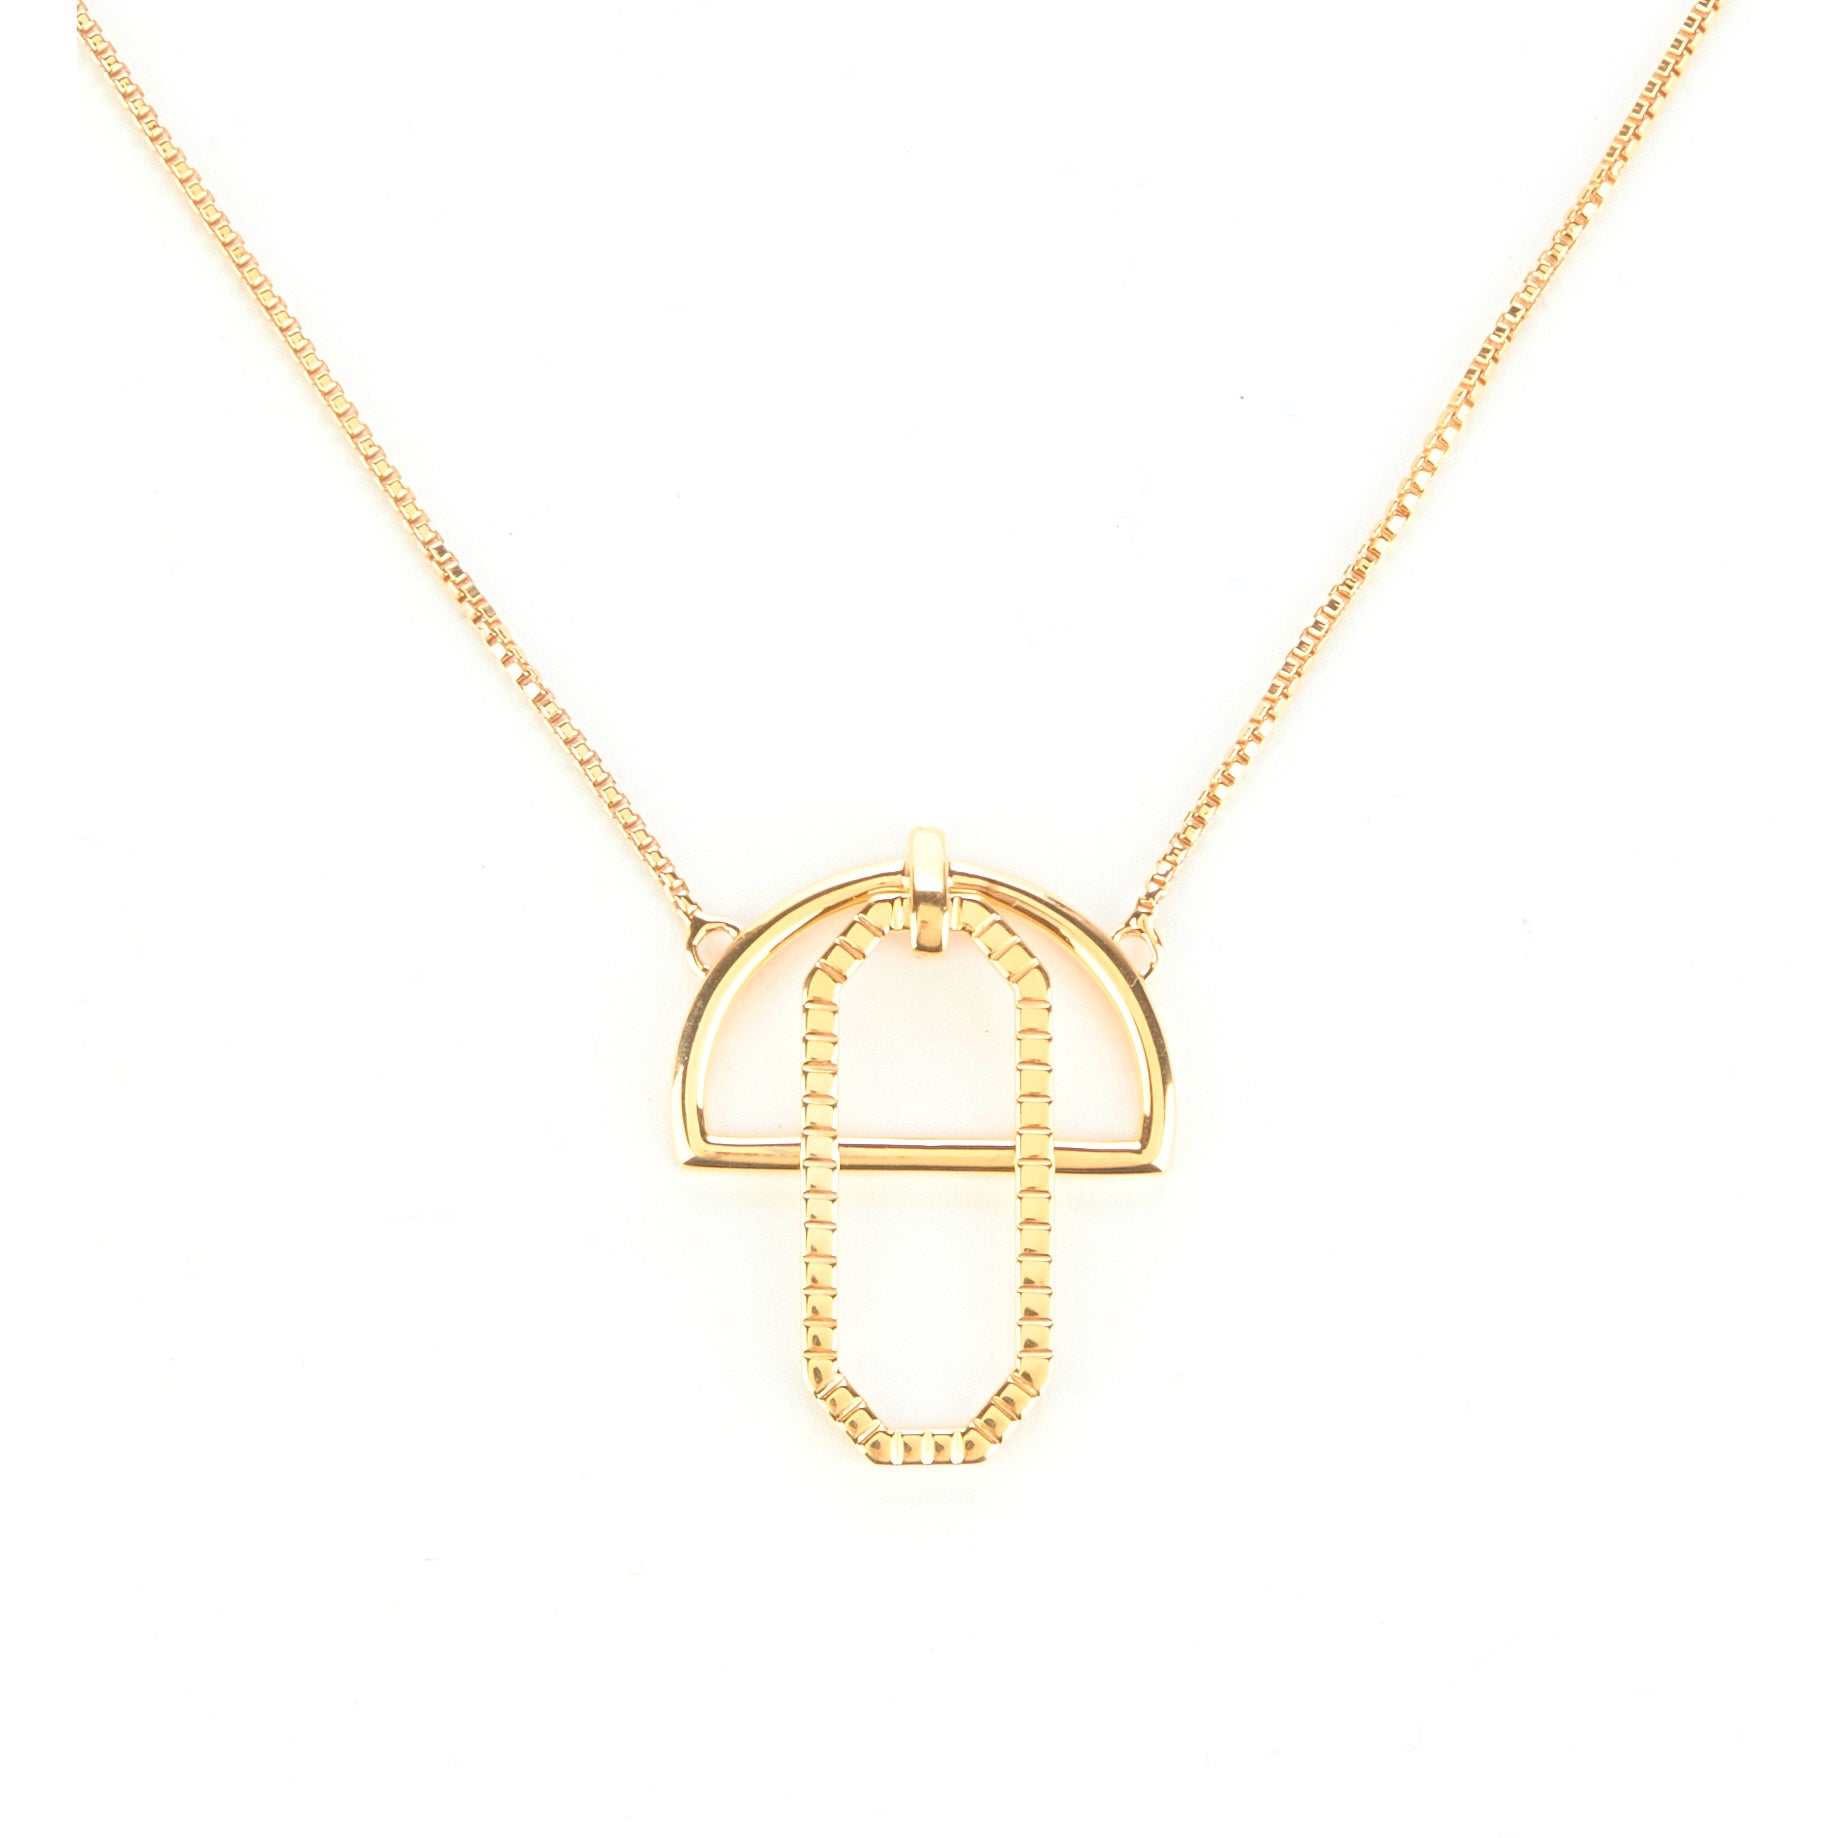 gold vermeil pendant necklace